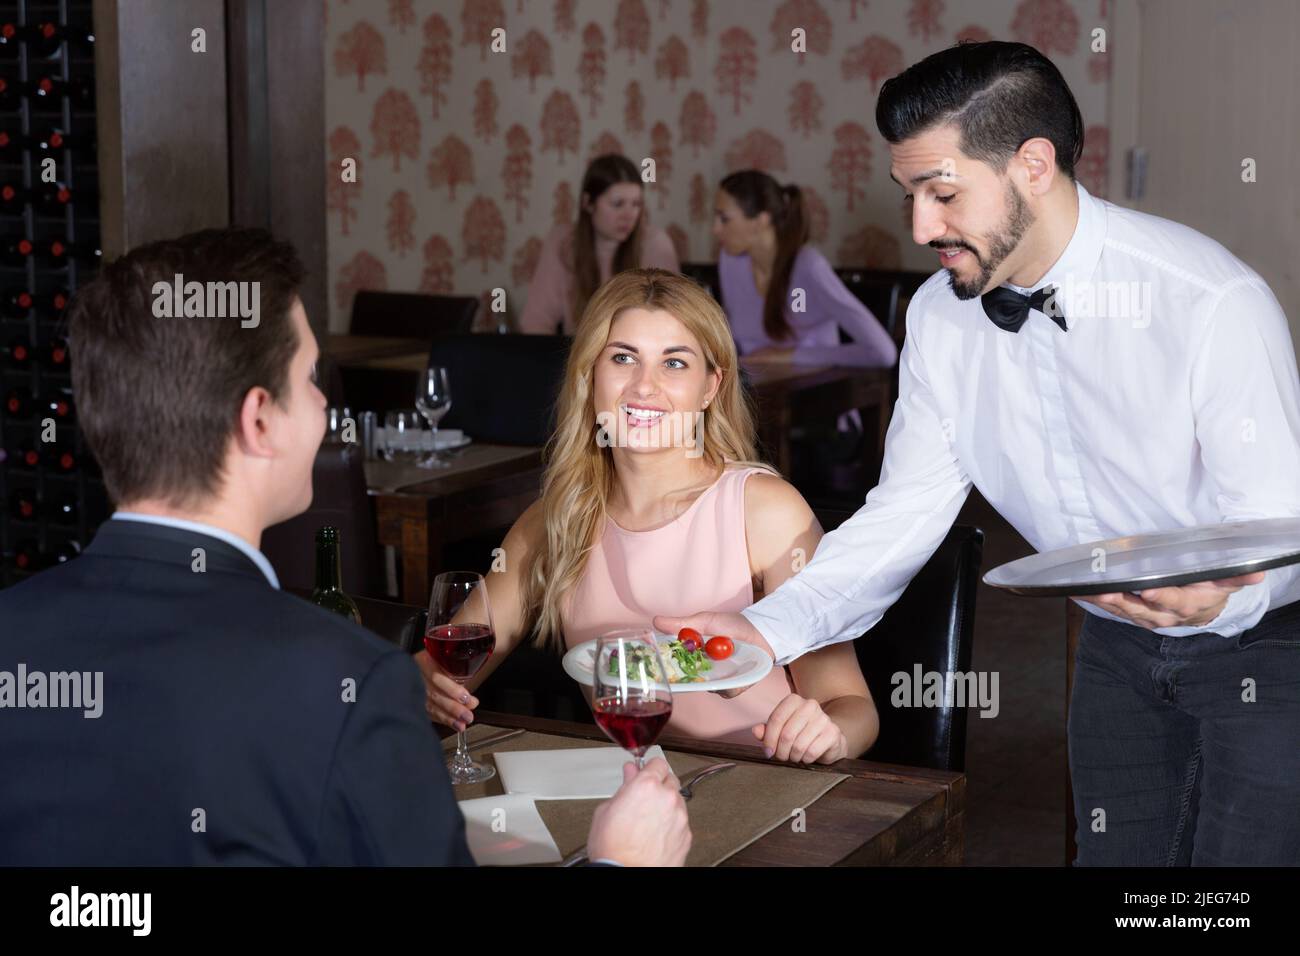 Poli garçon portant des plats commandés à smiling couple at restaurant Banque D'Images